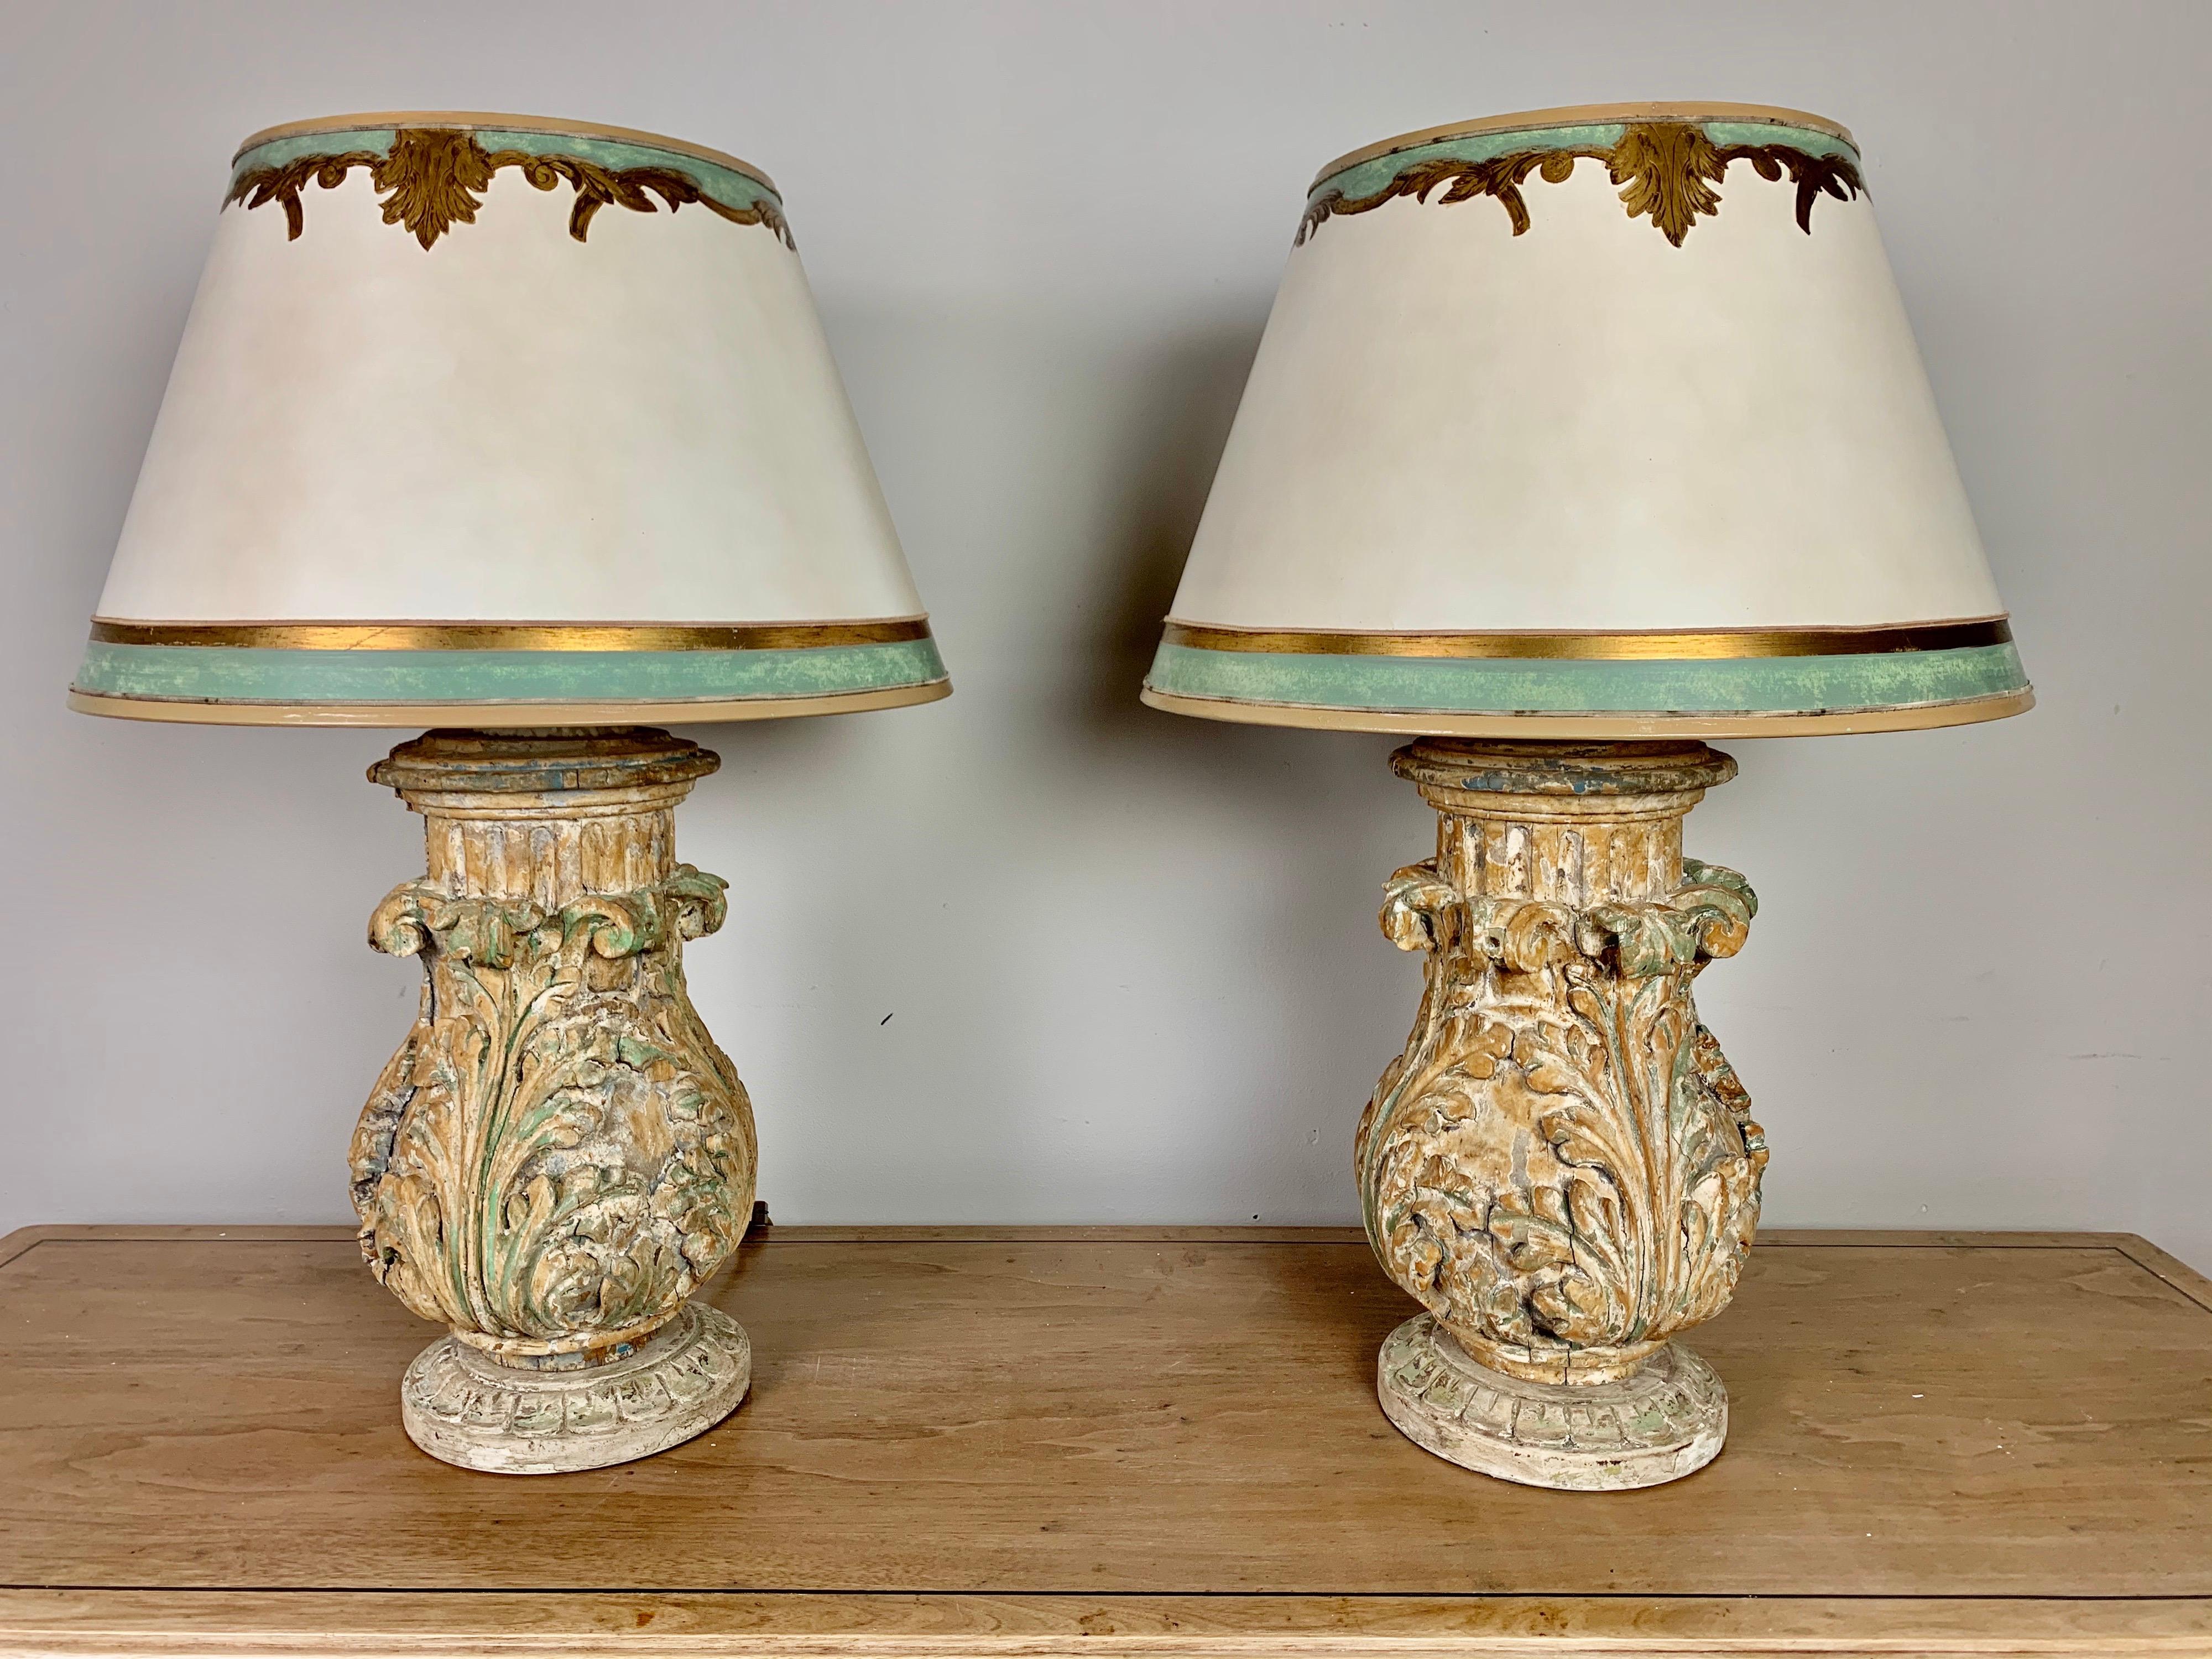 Paire de lampes faites sur mesure avec des feuilles d'acanthe sculptées à la main au 19ème siècle et montées dans les lampes. Les lampes sont couronnées d'abat-jours en parchemin peints à la main et assortis à la perfection. Les lampes sont